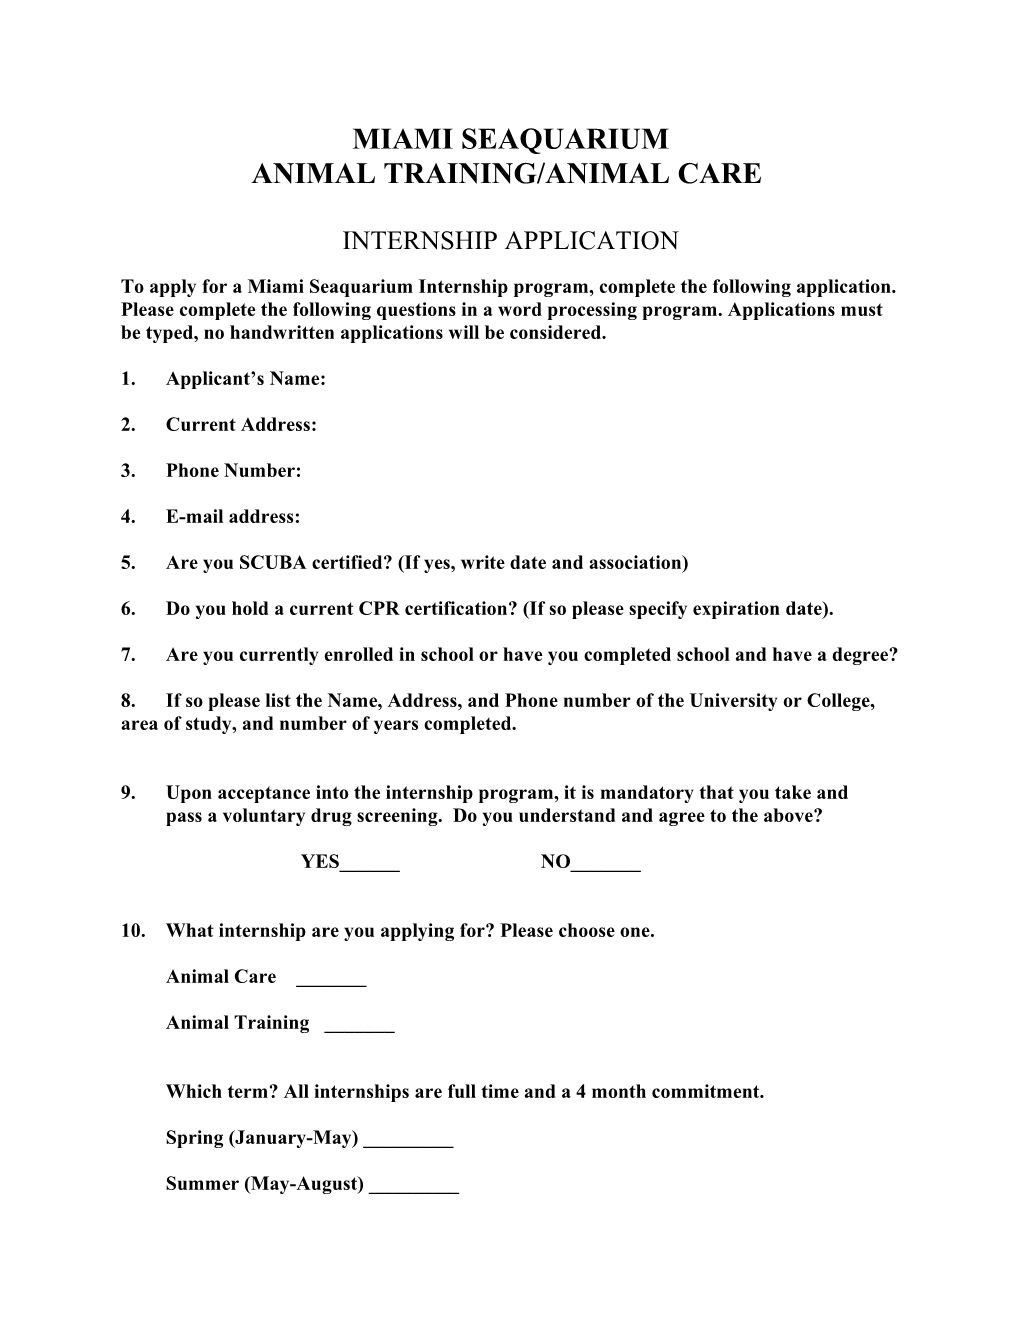 Animal Training/Animal Care